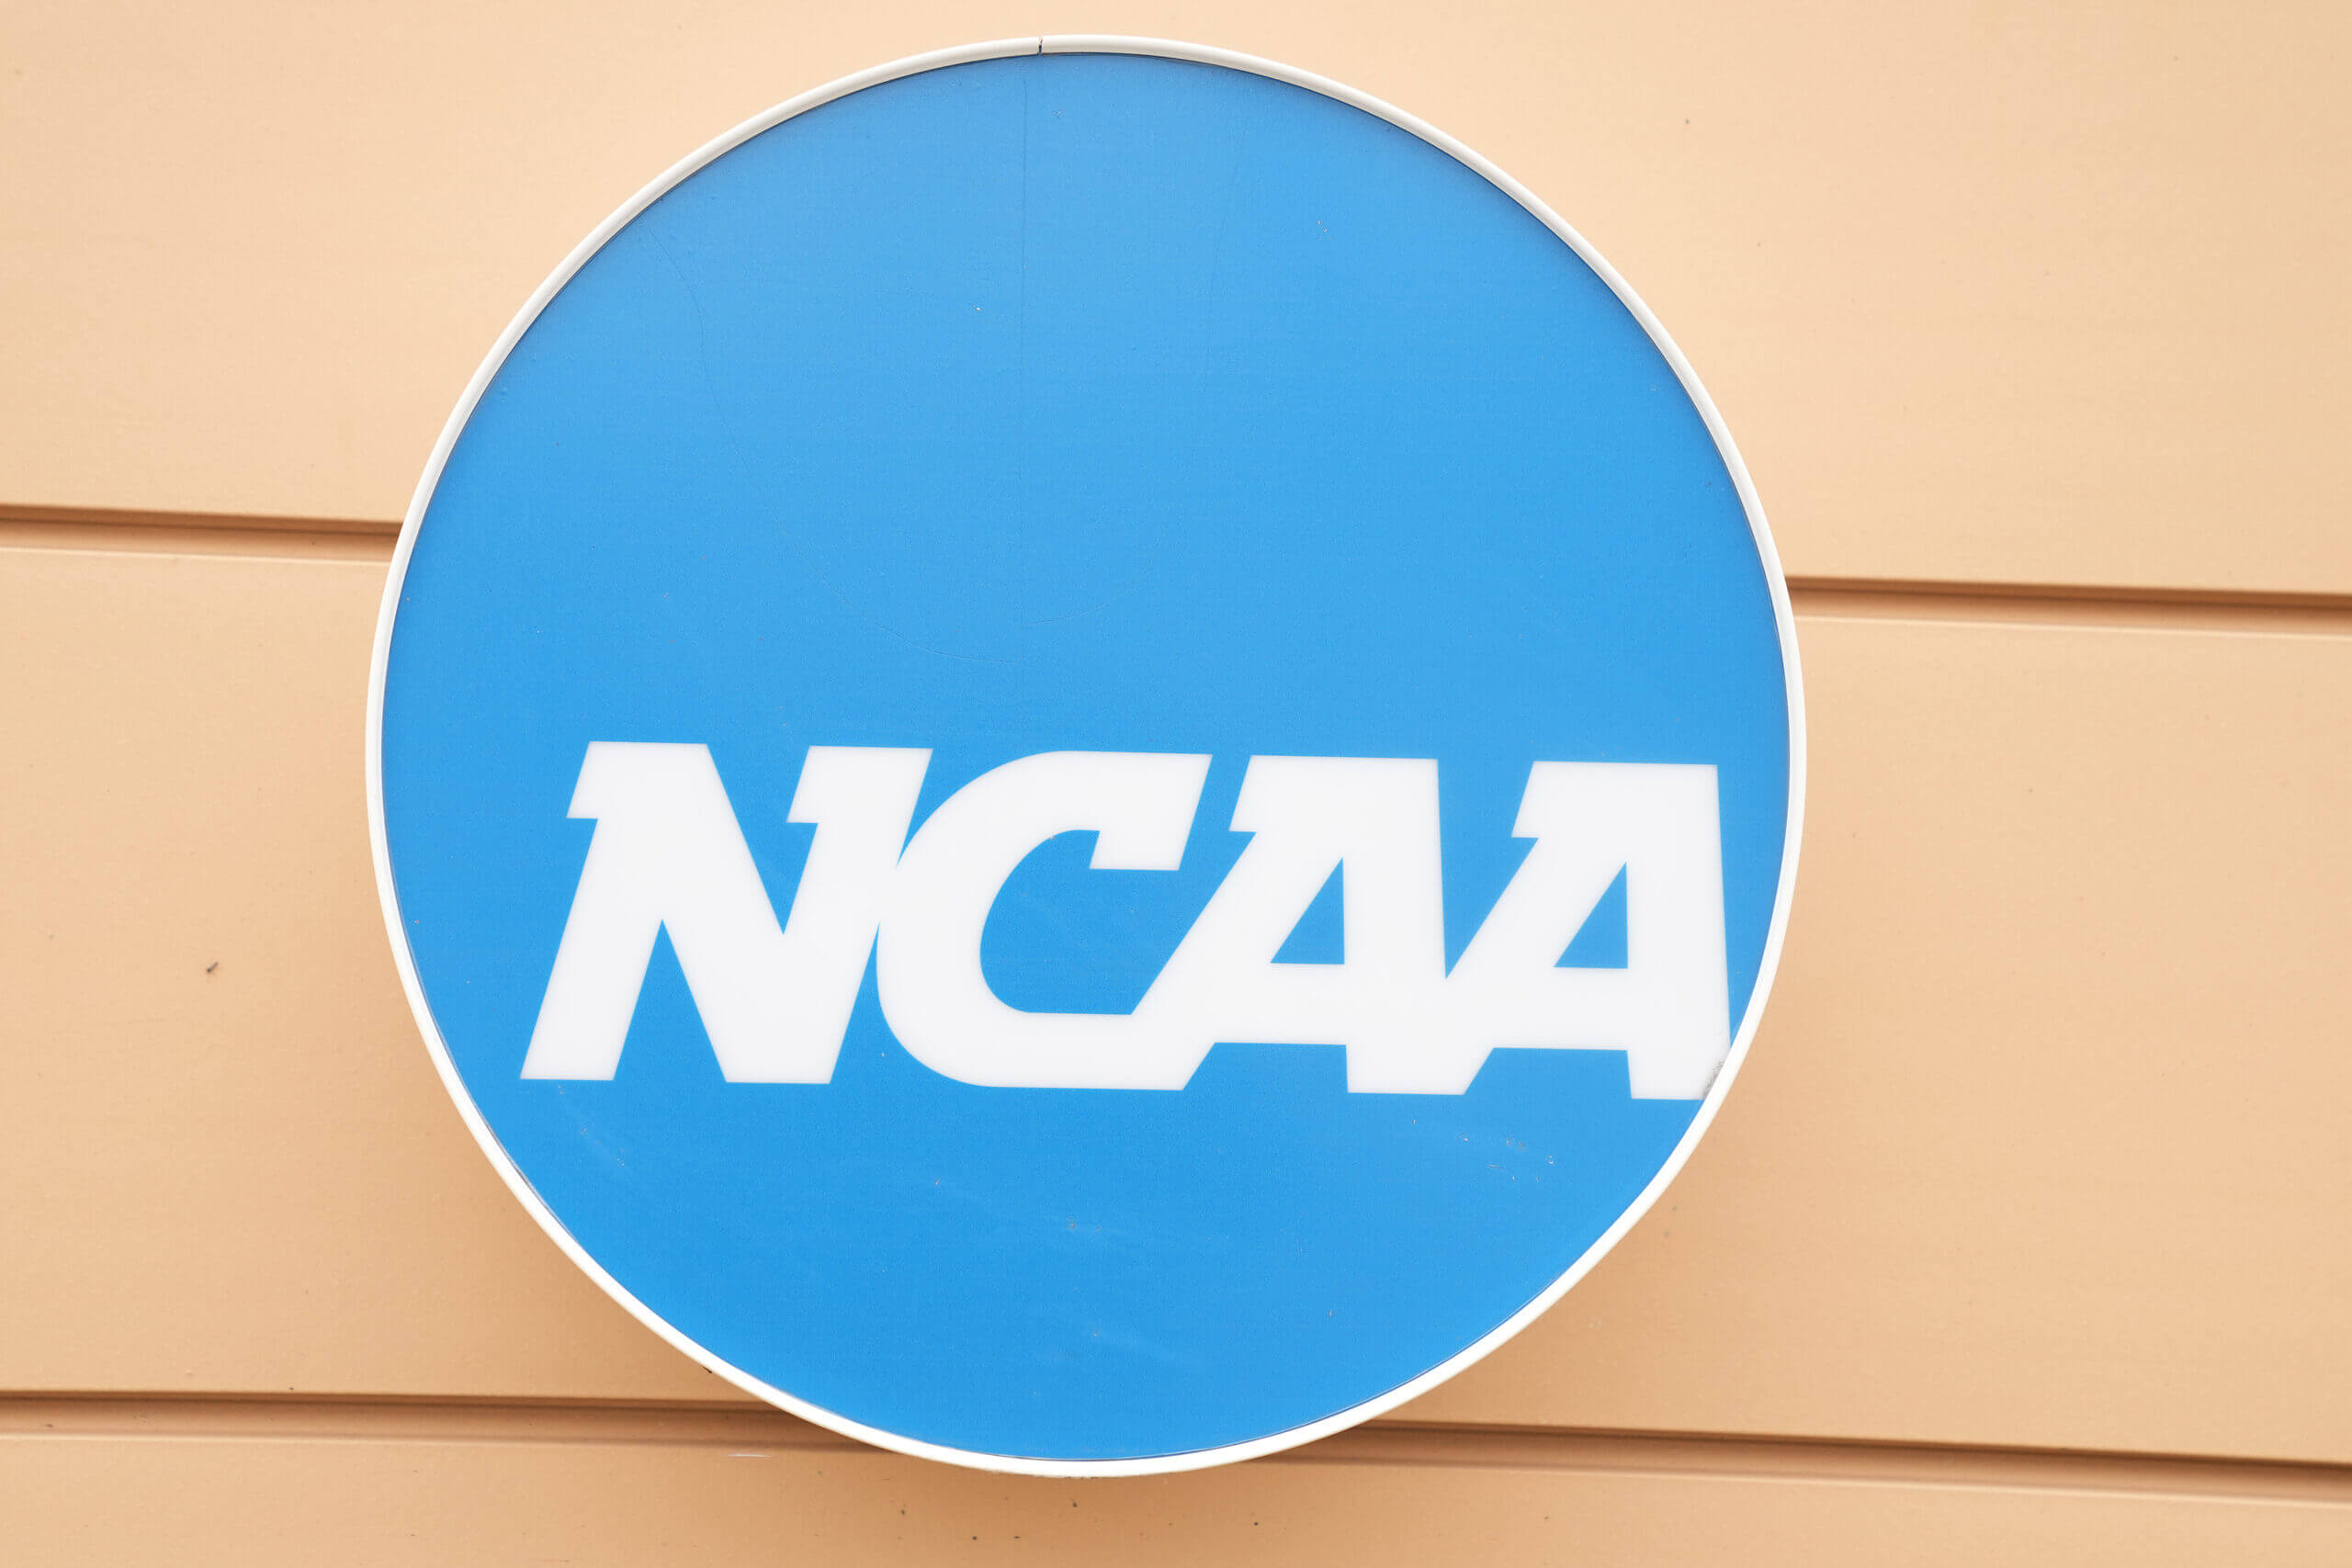 Los 12 grandes y los líderes del ACC aprueban House v.  NCAA: fuentes